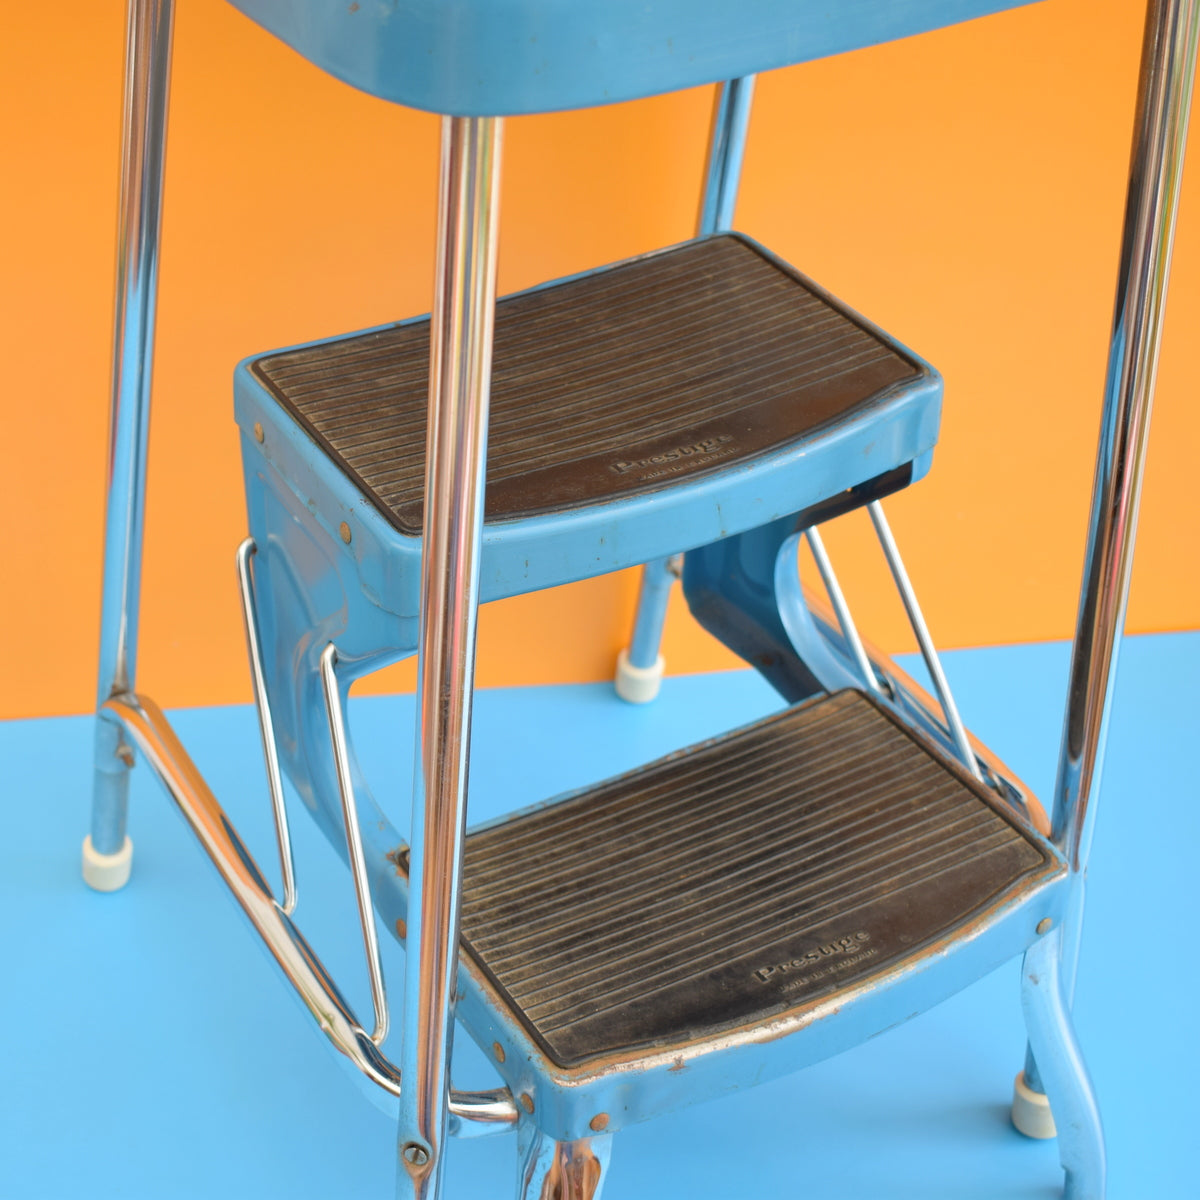 Vintage 1960s Adjustable Stool / Steps - Blue